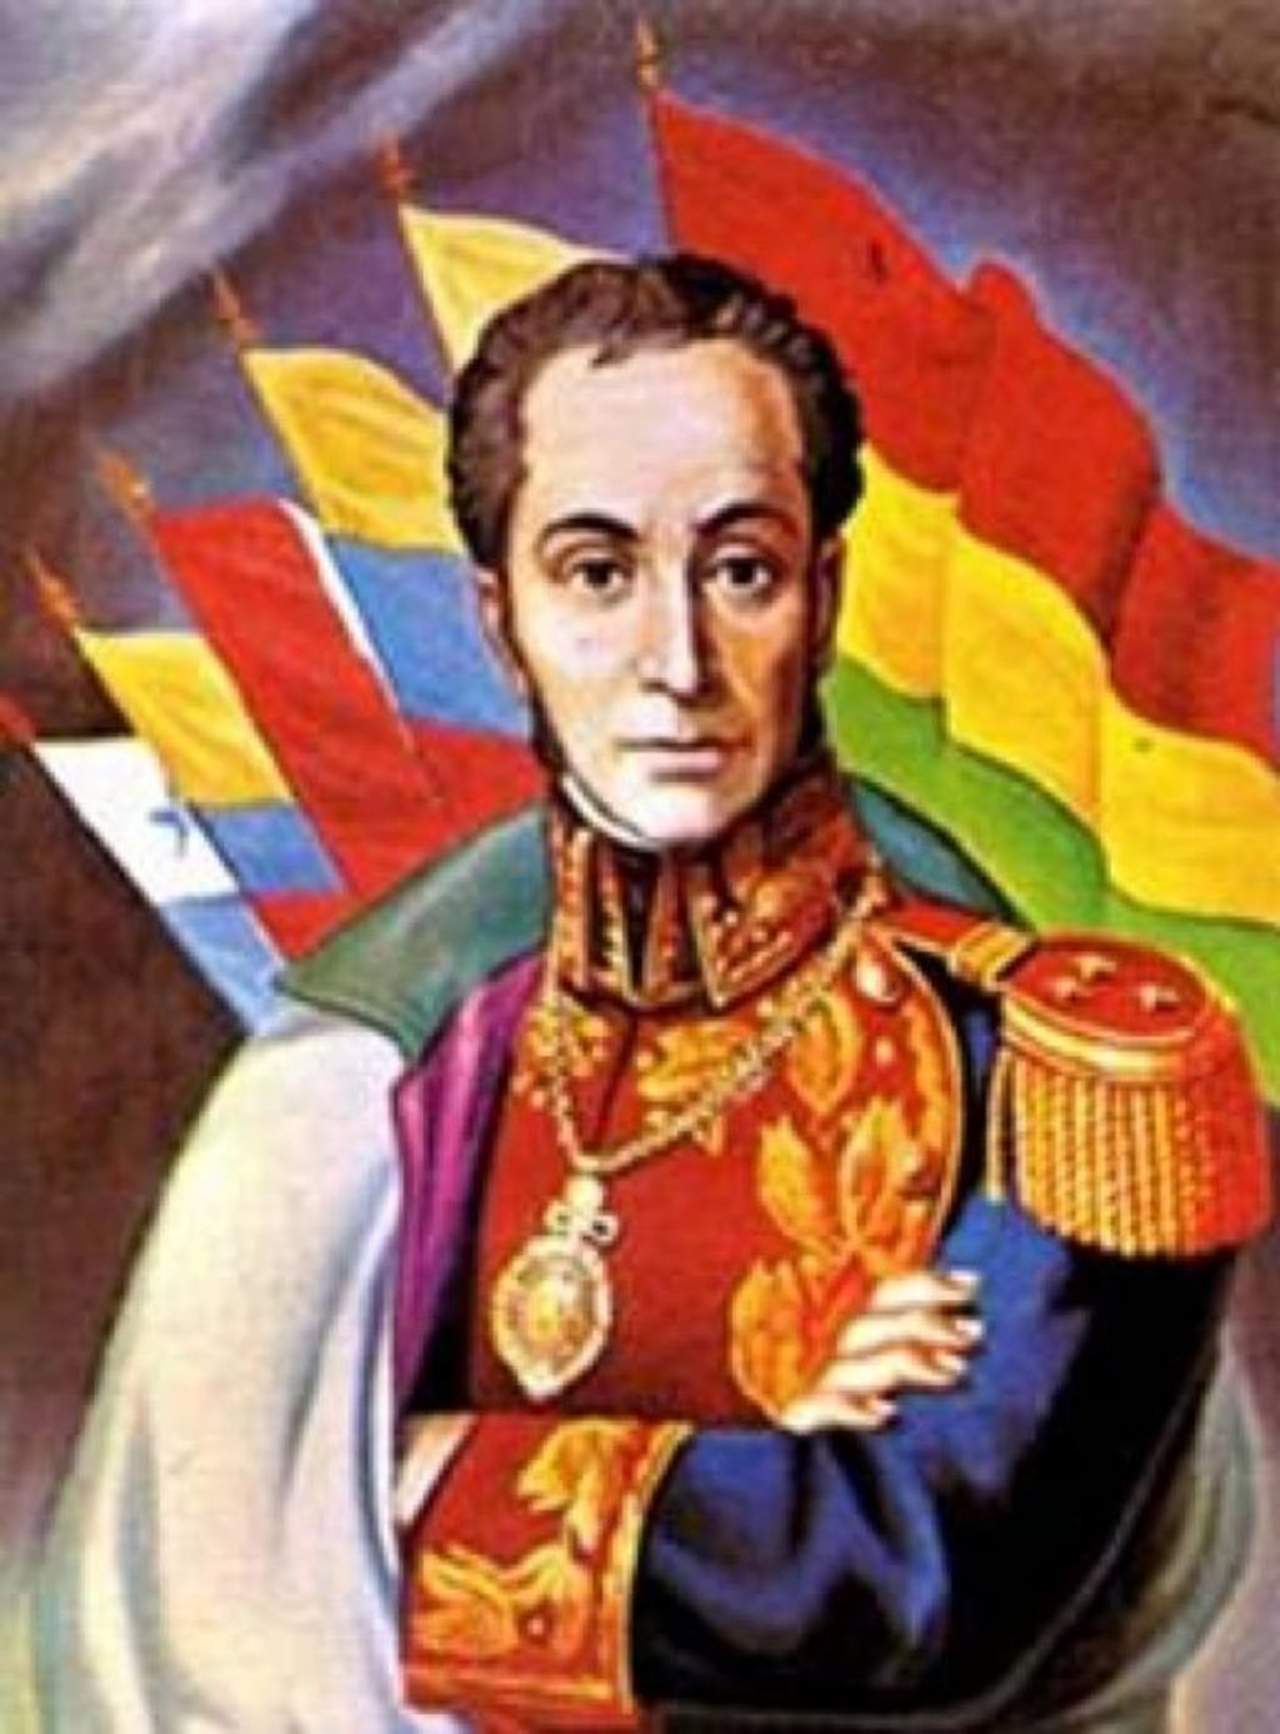 Considerado fundador de la Gran Colombia, Simón Bolívar,, a quien se recuerda a 186 años de su muerte, que se cumplen este 17 de diciembre, pasó a la historia como una de las figuras más destacadas de emancipación americana frente al Imperio español. (ESPECIAL)